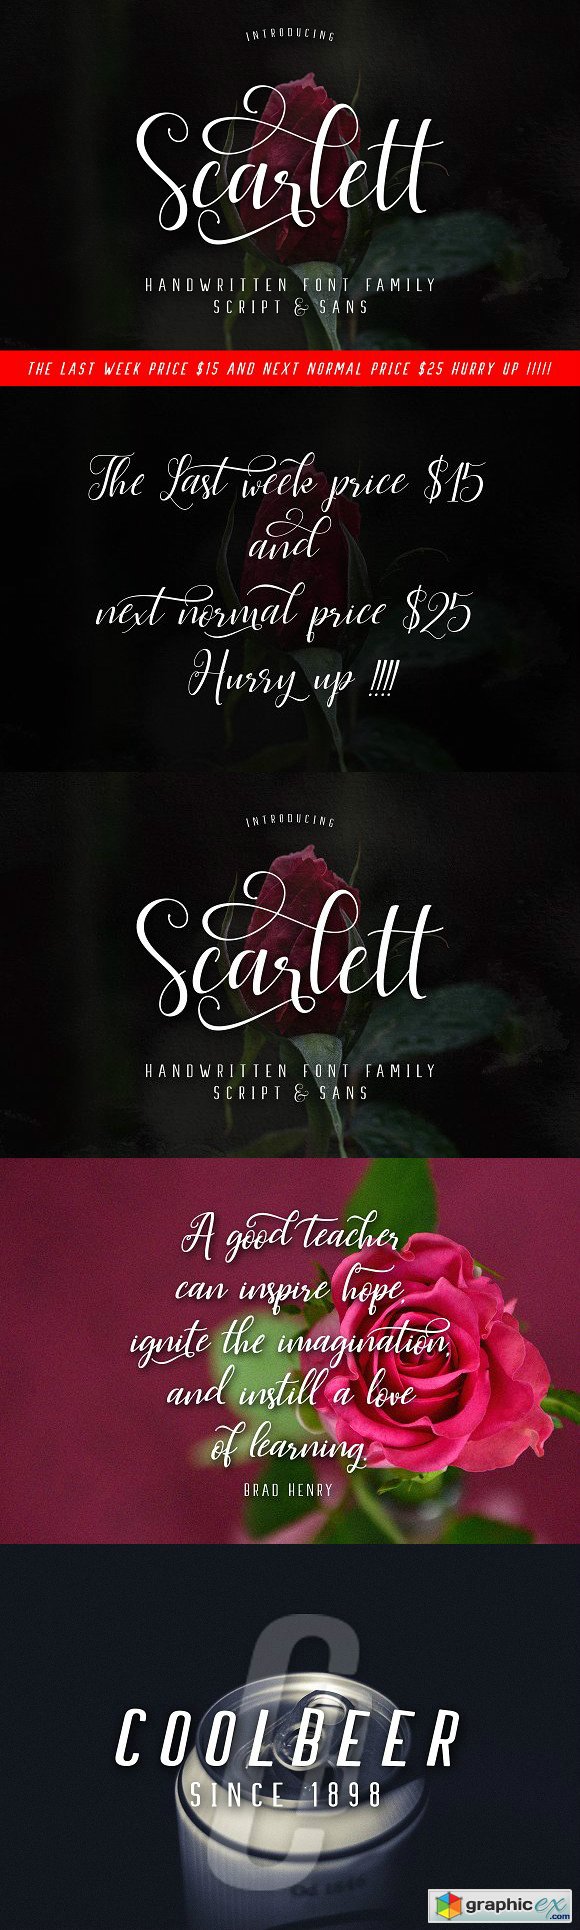 Scarlett Font Family